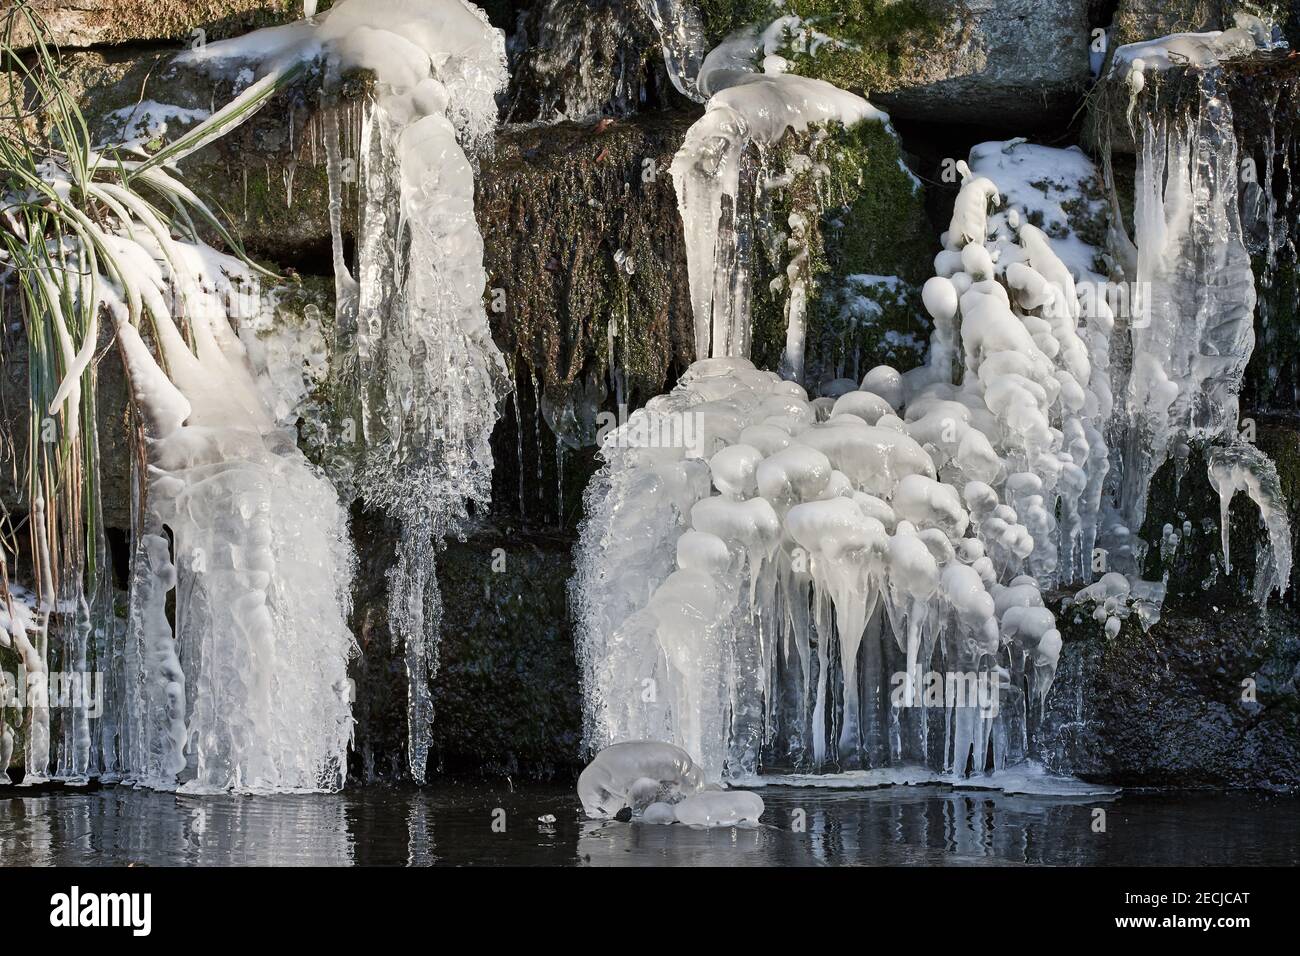 Nahaufnahme von großen gefrorenen Eiszapfen, die im Winter am Wasserfall hängen Stockfoto